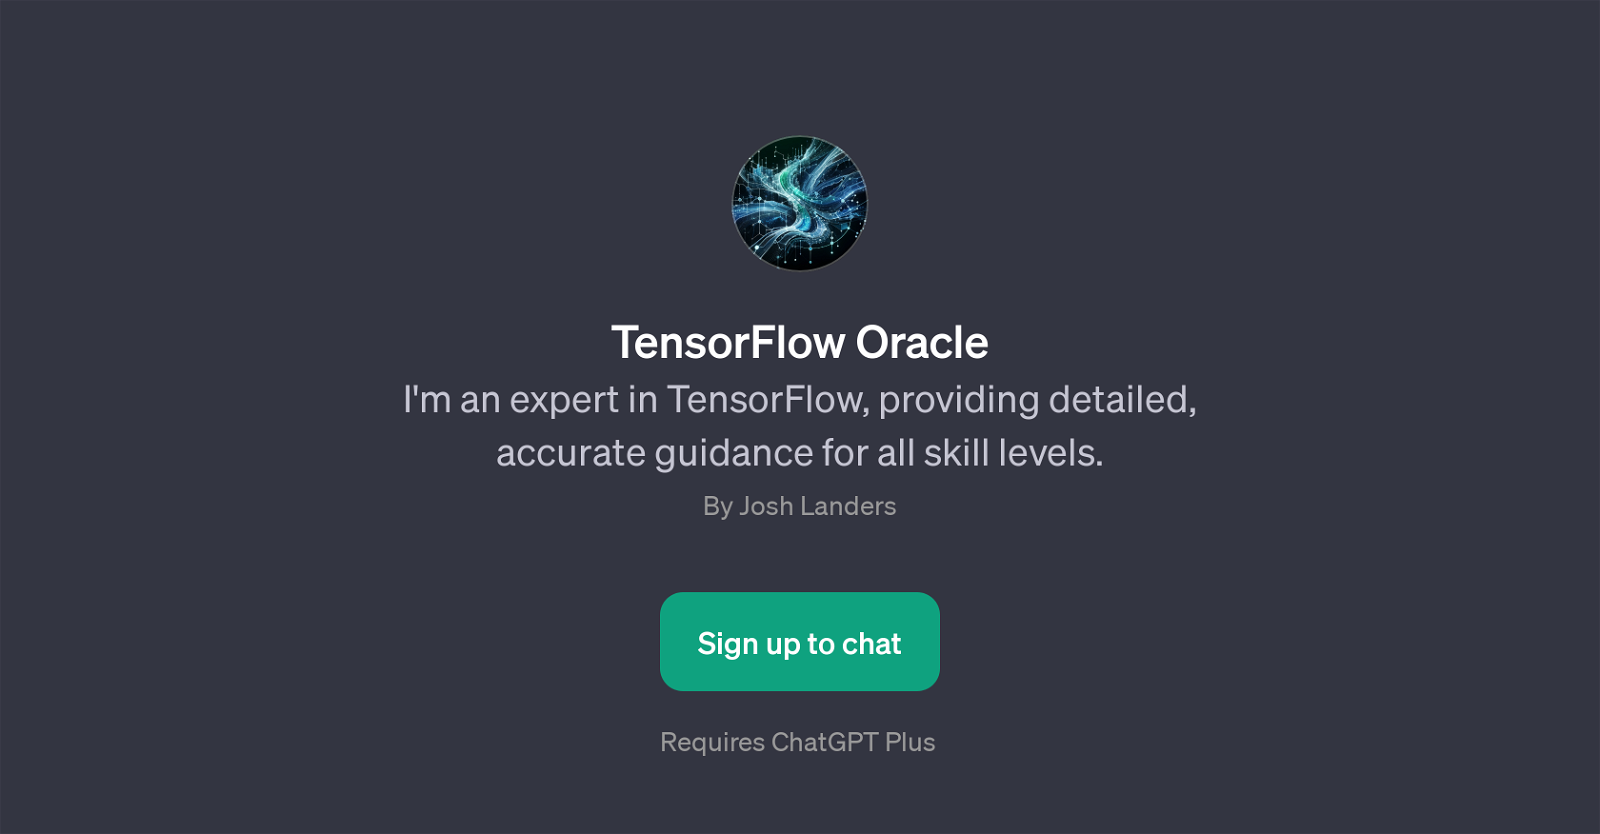 TensorFlow Oracle website